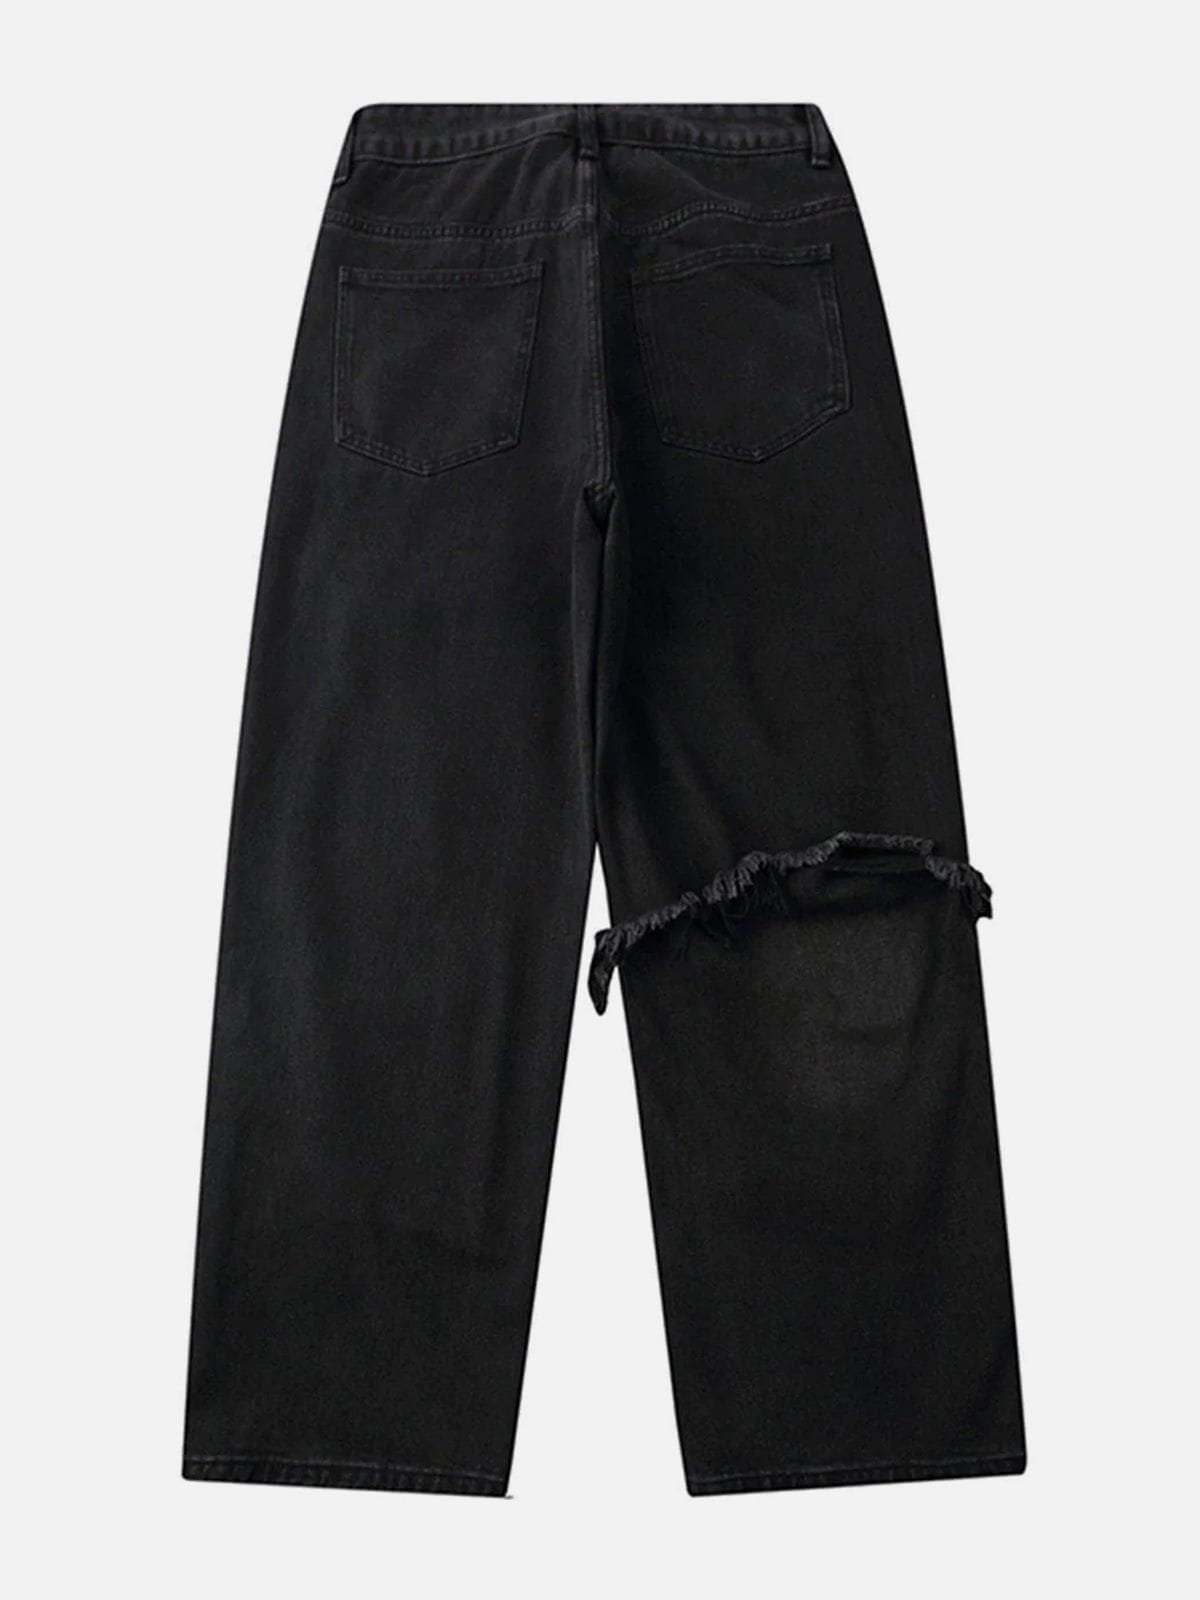 Eprezzy® - Ripped Stitched Jeans Streetwear Fashion - eprezzy.com